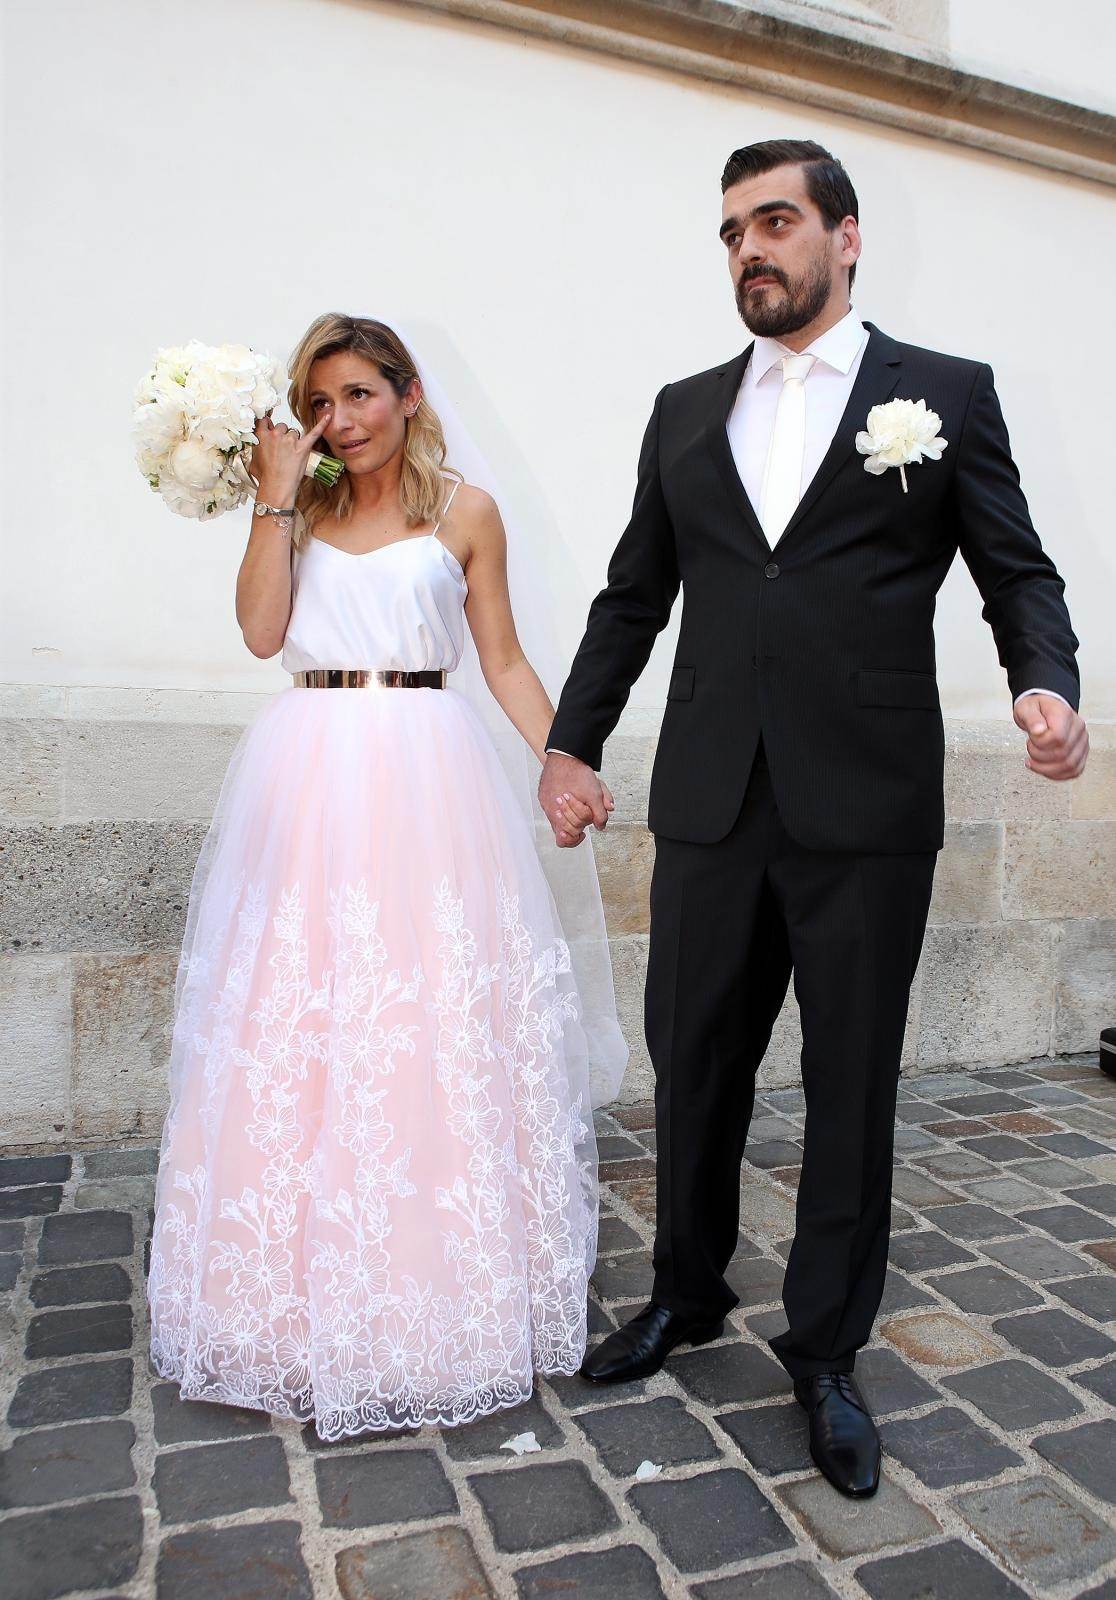 Antonija Blaće i Hrvoje Brlečić u braku su od 2015. godine